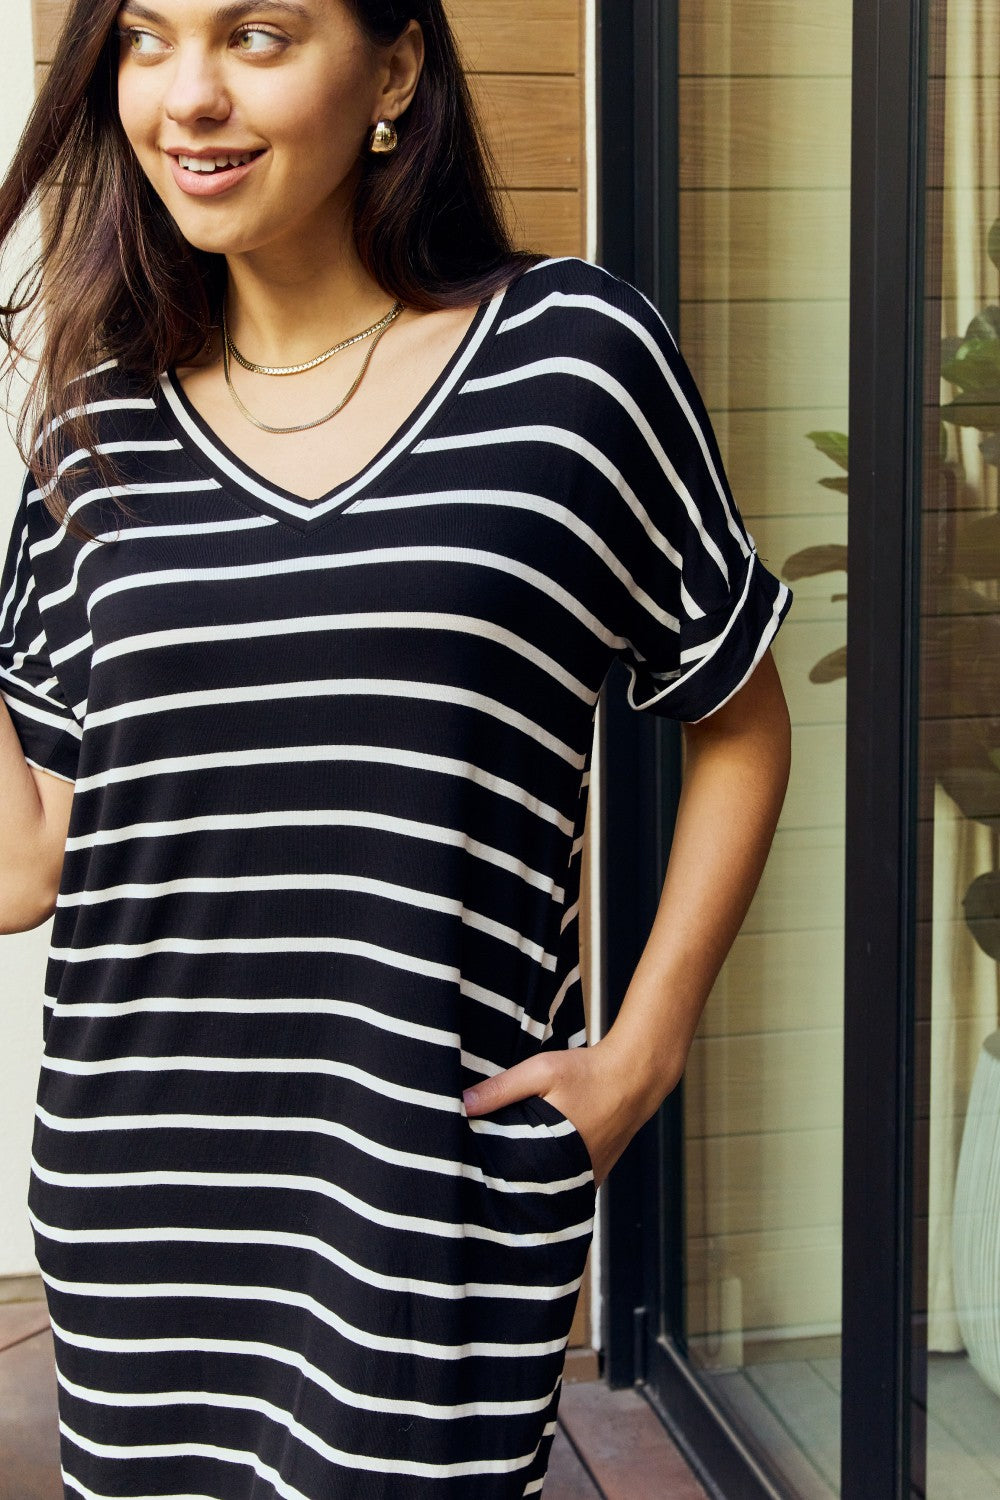 Kensey Black Stripe Weekender Full Size Striped V-Neck Pocket Dress in Black/Ivory - Coco and lulu boutique 